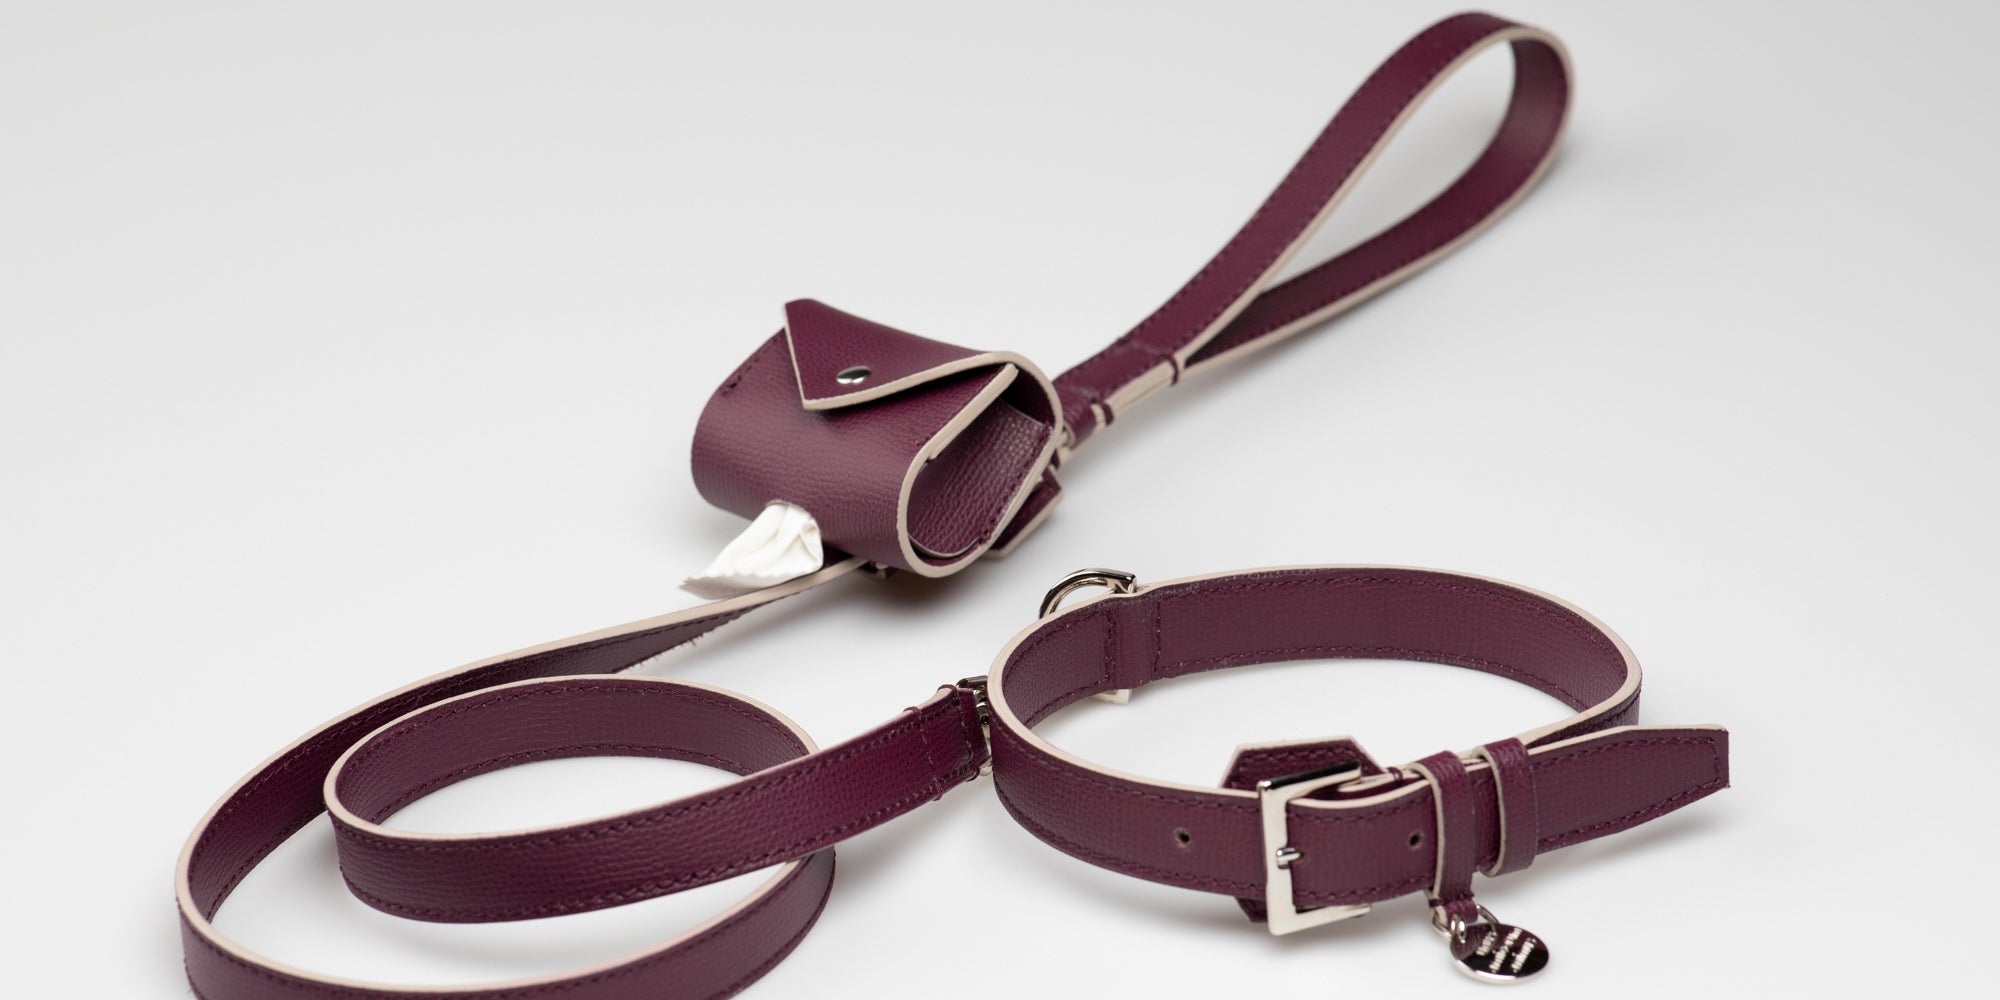 dog-leash-printed-leather-11_8932ed33-743d-4ad4-b78c-c2c05fb4e84f.jpg